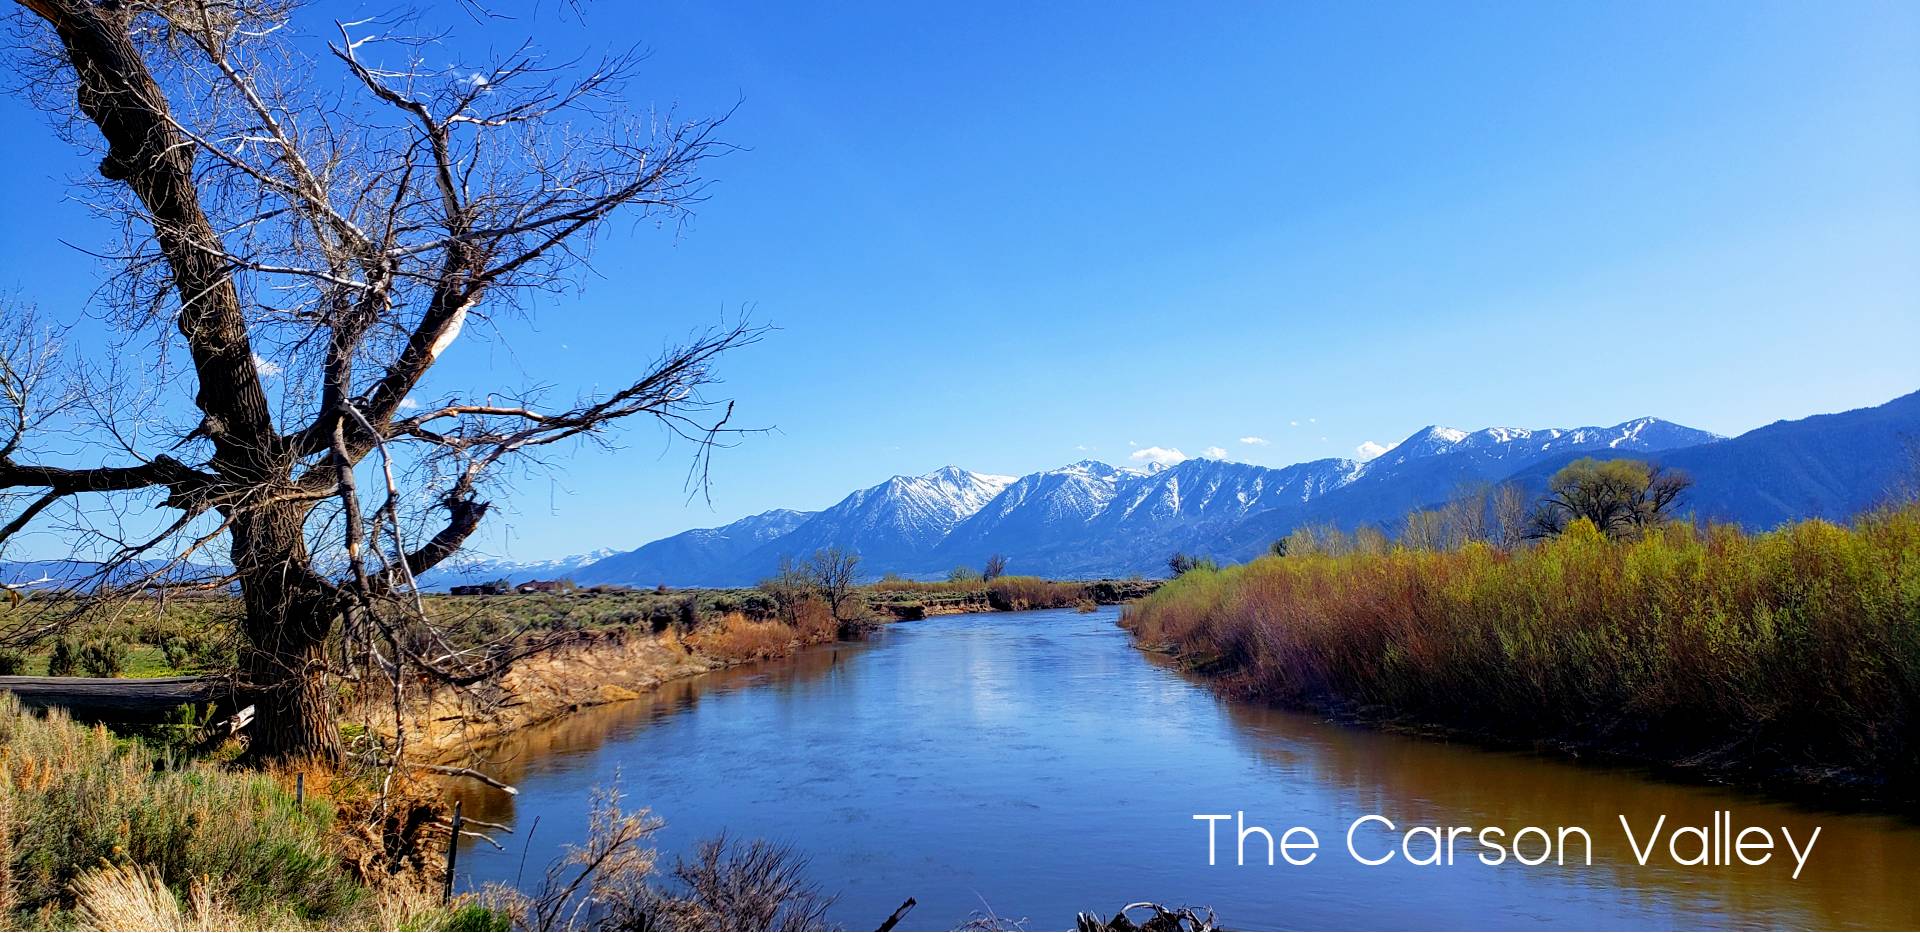 Explore The Carson Valley